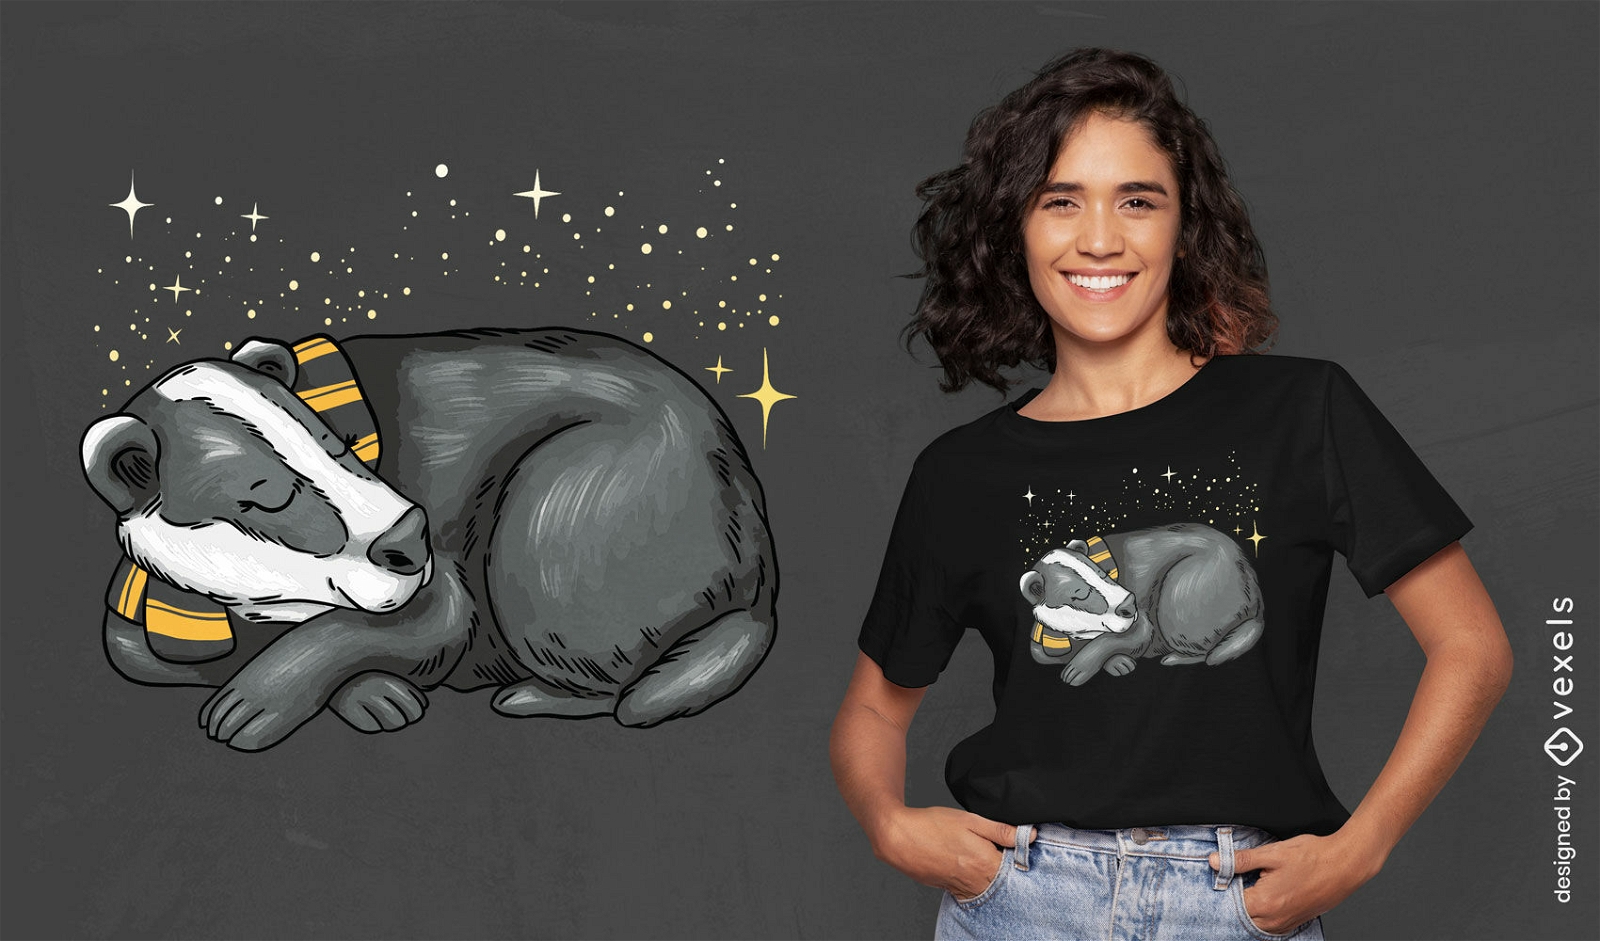 Sleeping badger t-shirt design